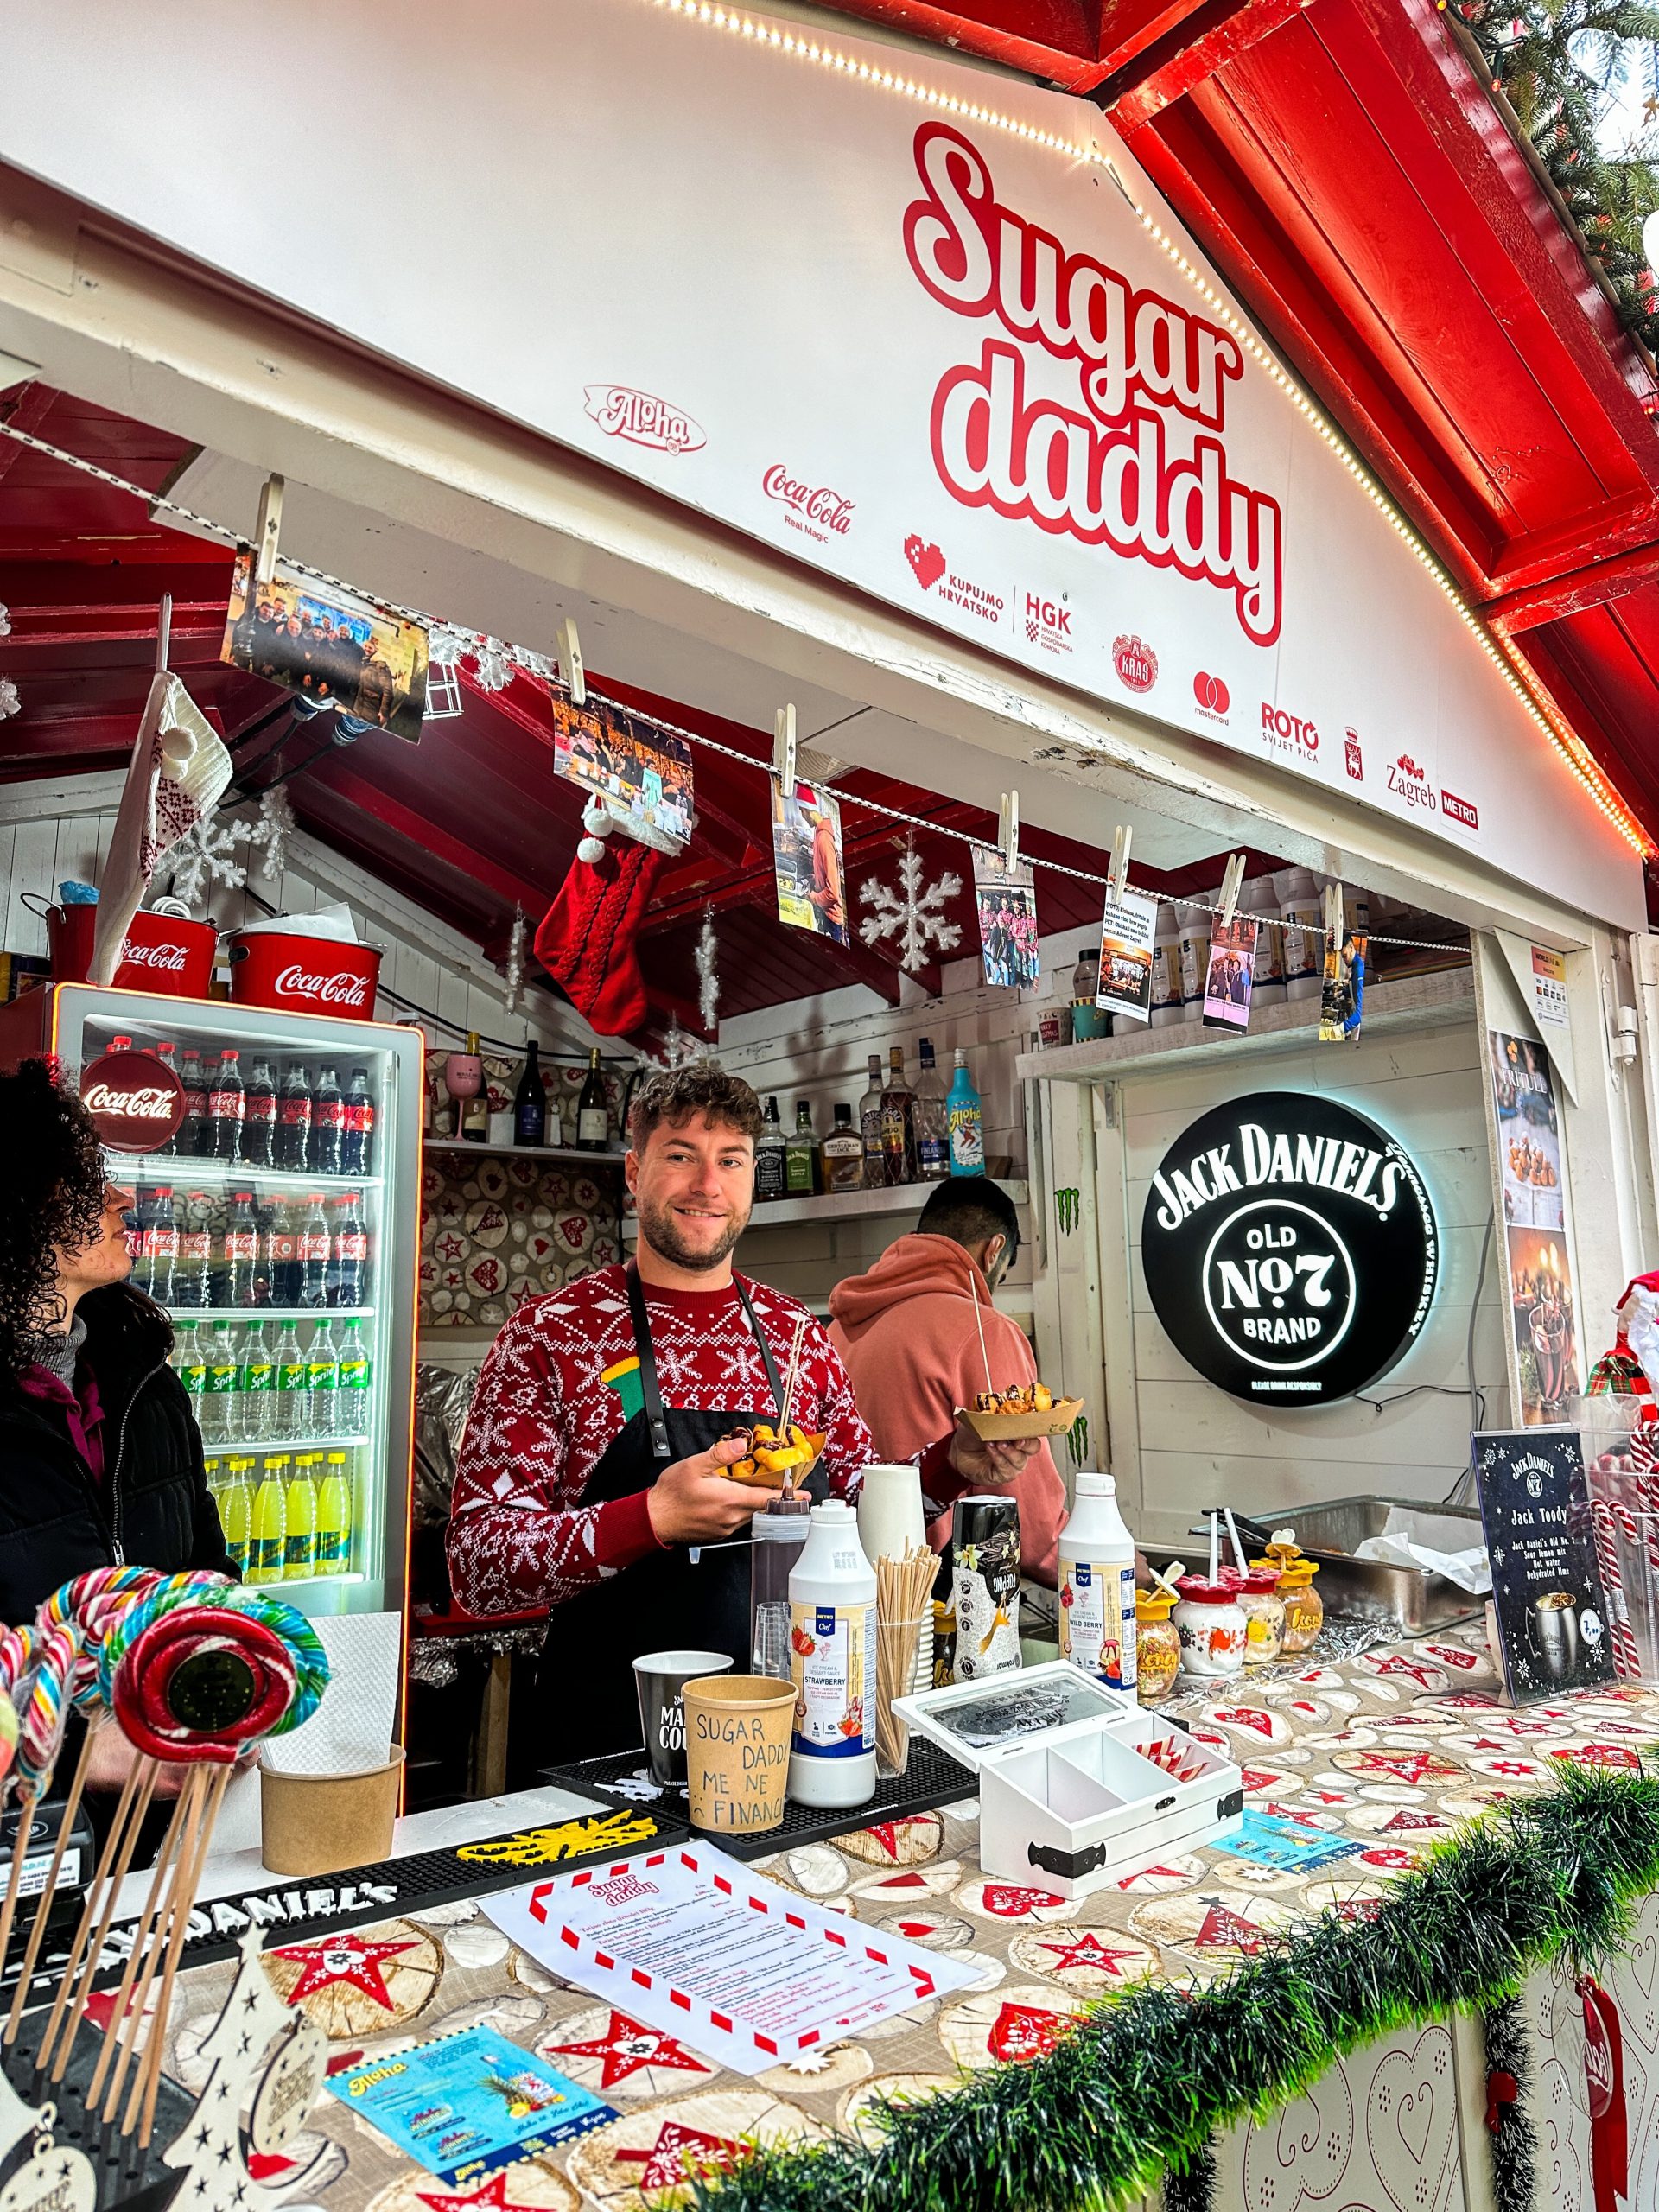 Door heel Zagreb vind je de kerstmarkten, met vooral veel lekker eten en drinken